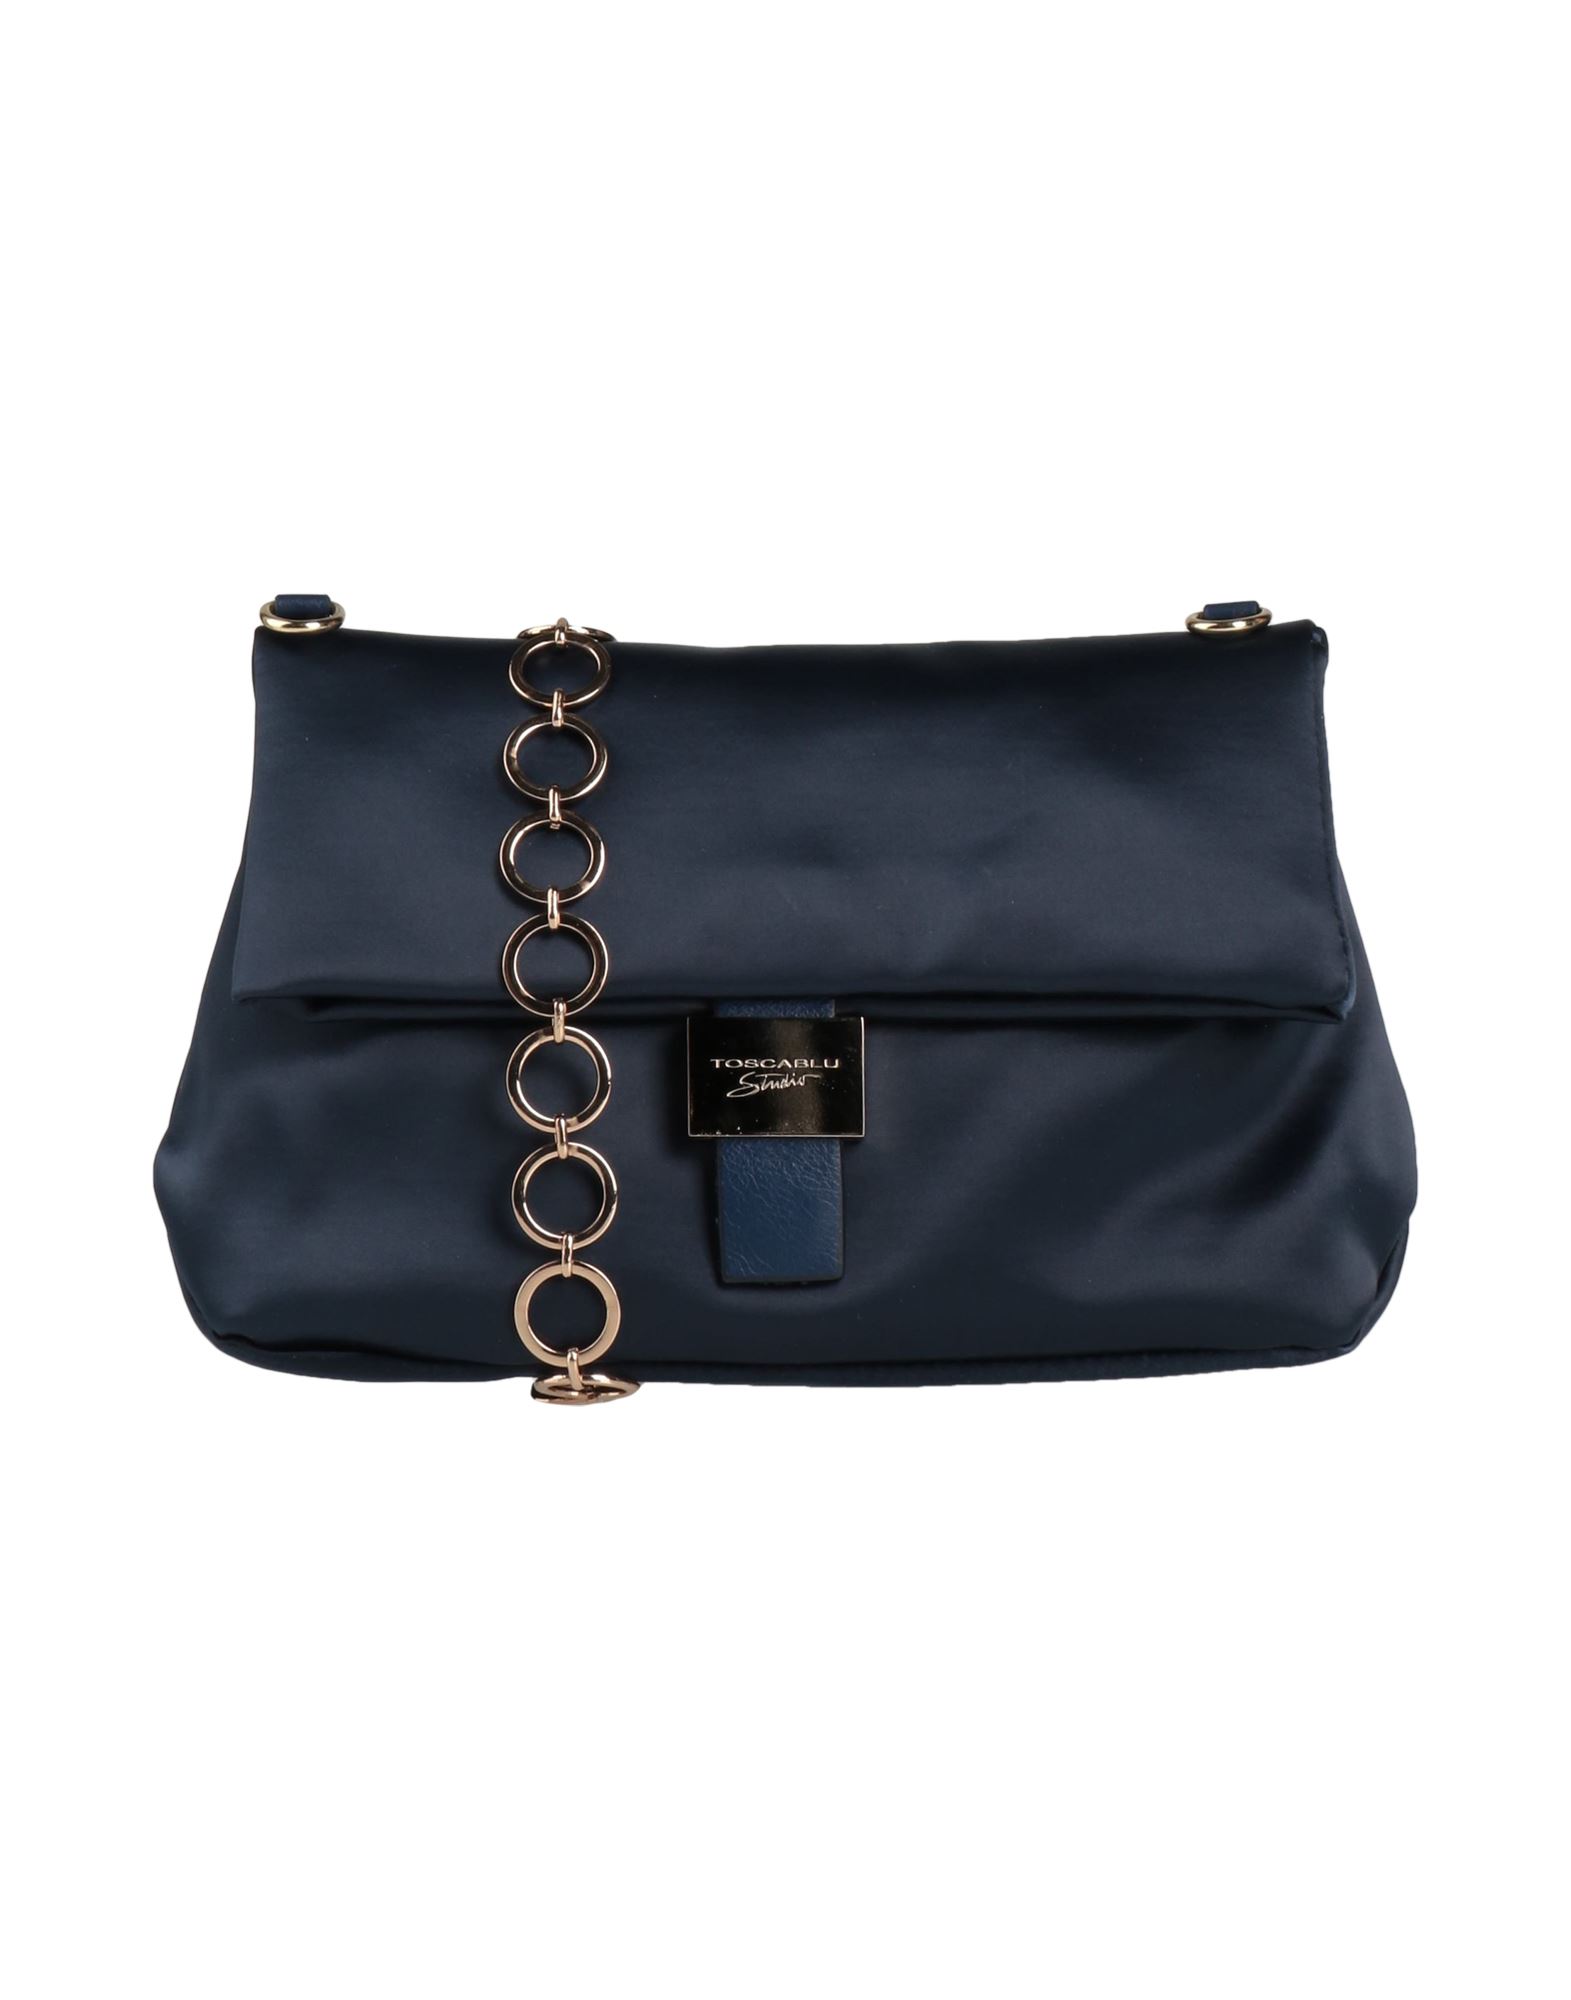 Tosca Blu Handbags In Midnight Blue